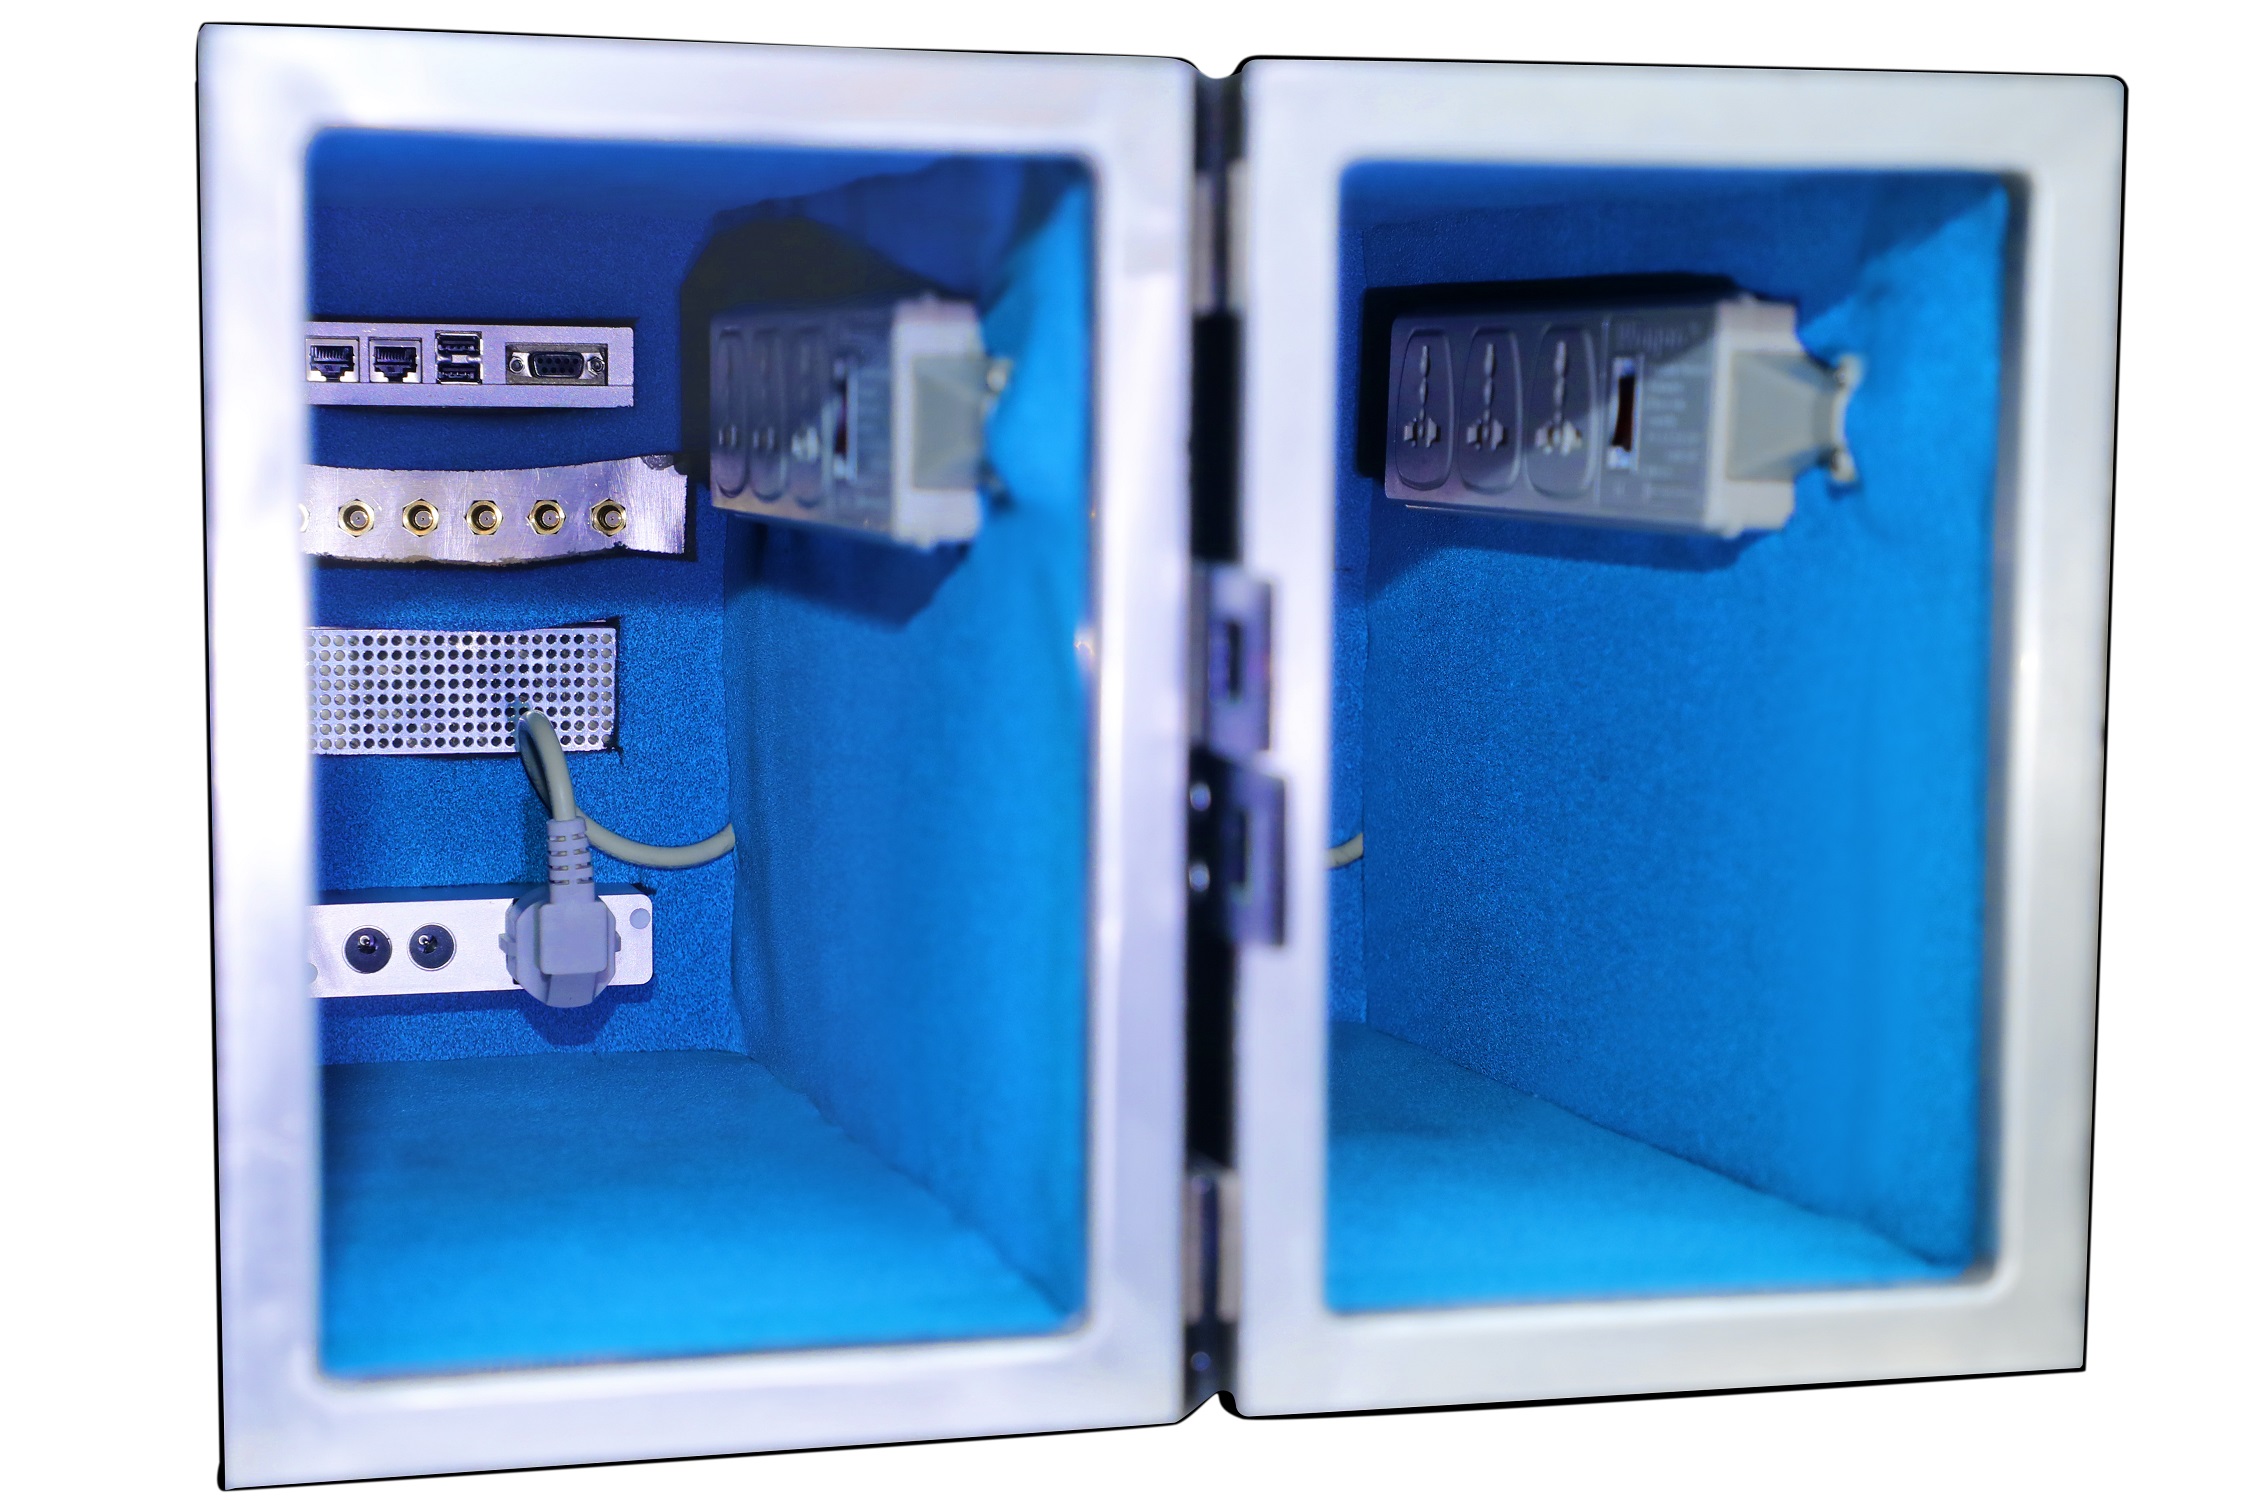 HDRF-D1260-K RF Shield Test Box